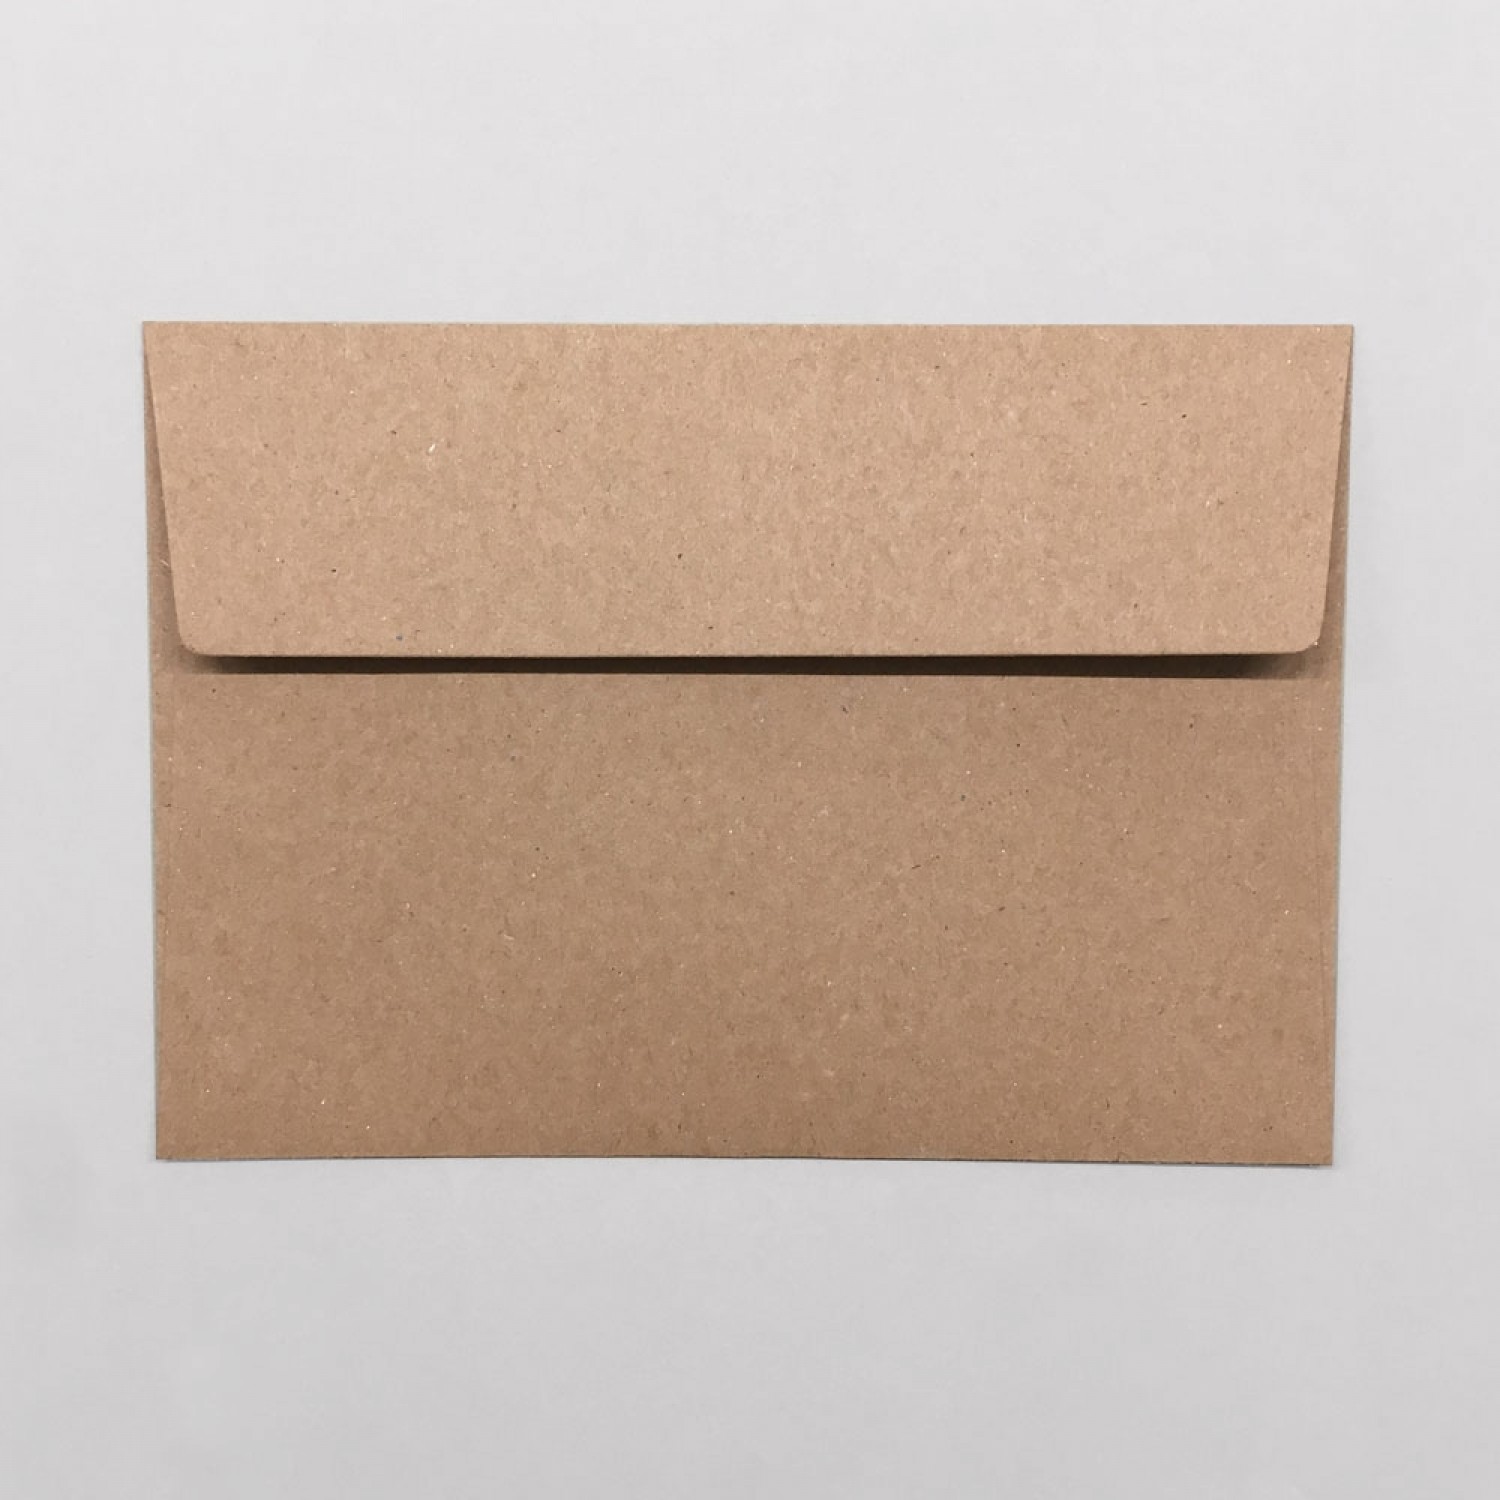 Öko Briefumschläge C6 aus Recycling Papier, braun | eco-cards